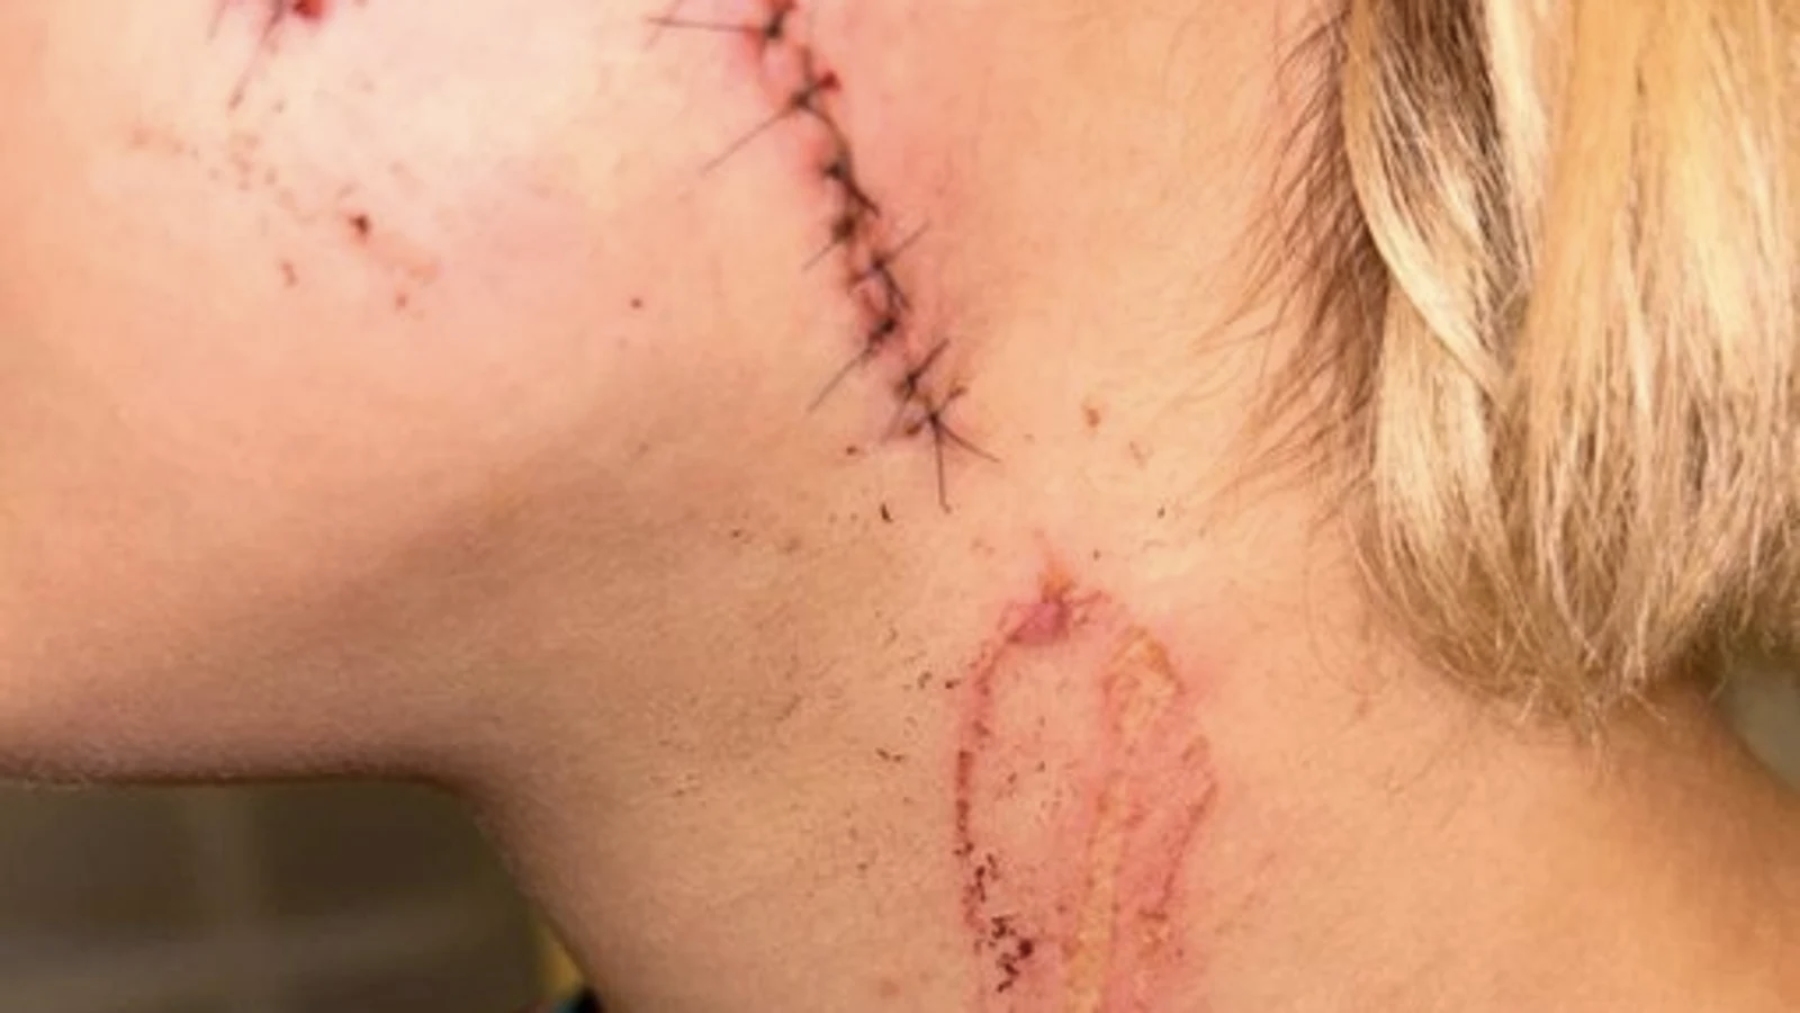 La joven agredida quedó con una enorme cicatriz en rostro y cuello.